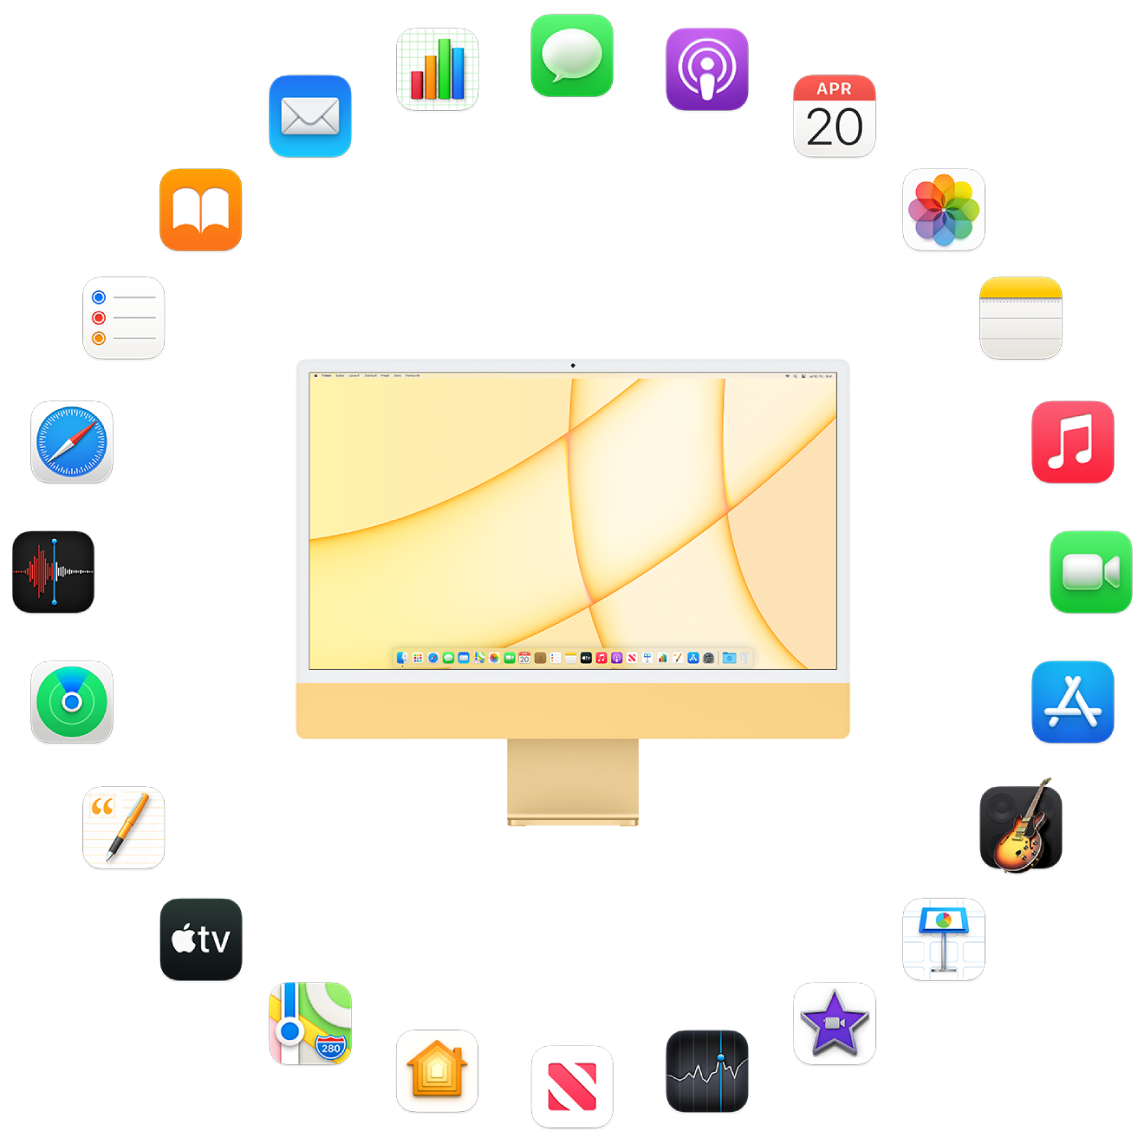 iMac obklopený ikonami vstavaných aplikácií, ktoré sú popísané v nasledujúcich častiach.